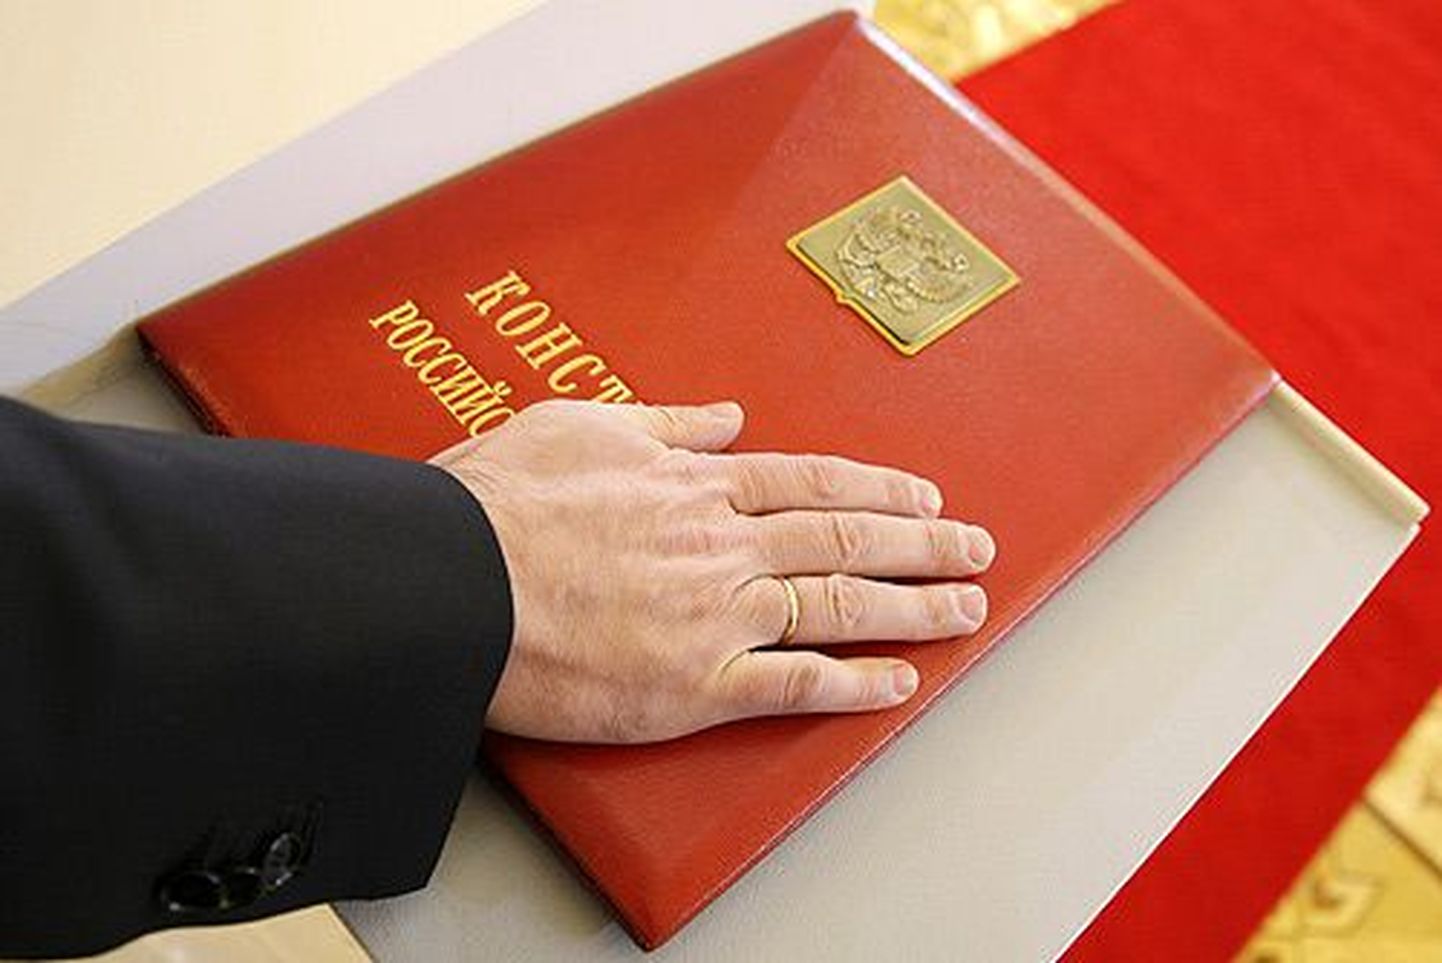 Venemaa presidendi ametivande andmine. Pildil olev käsi kuulub Dmitri Medvedevile.